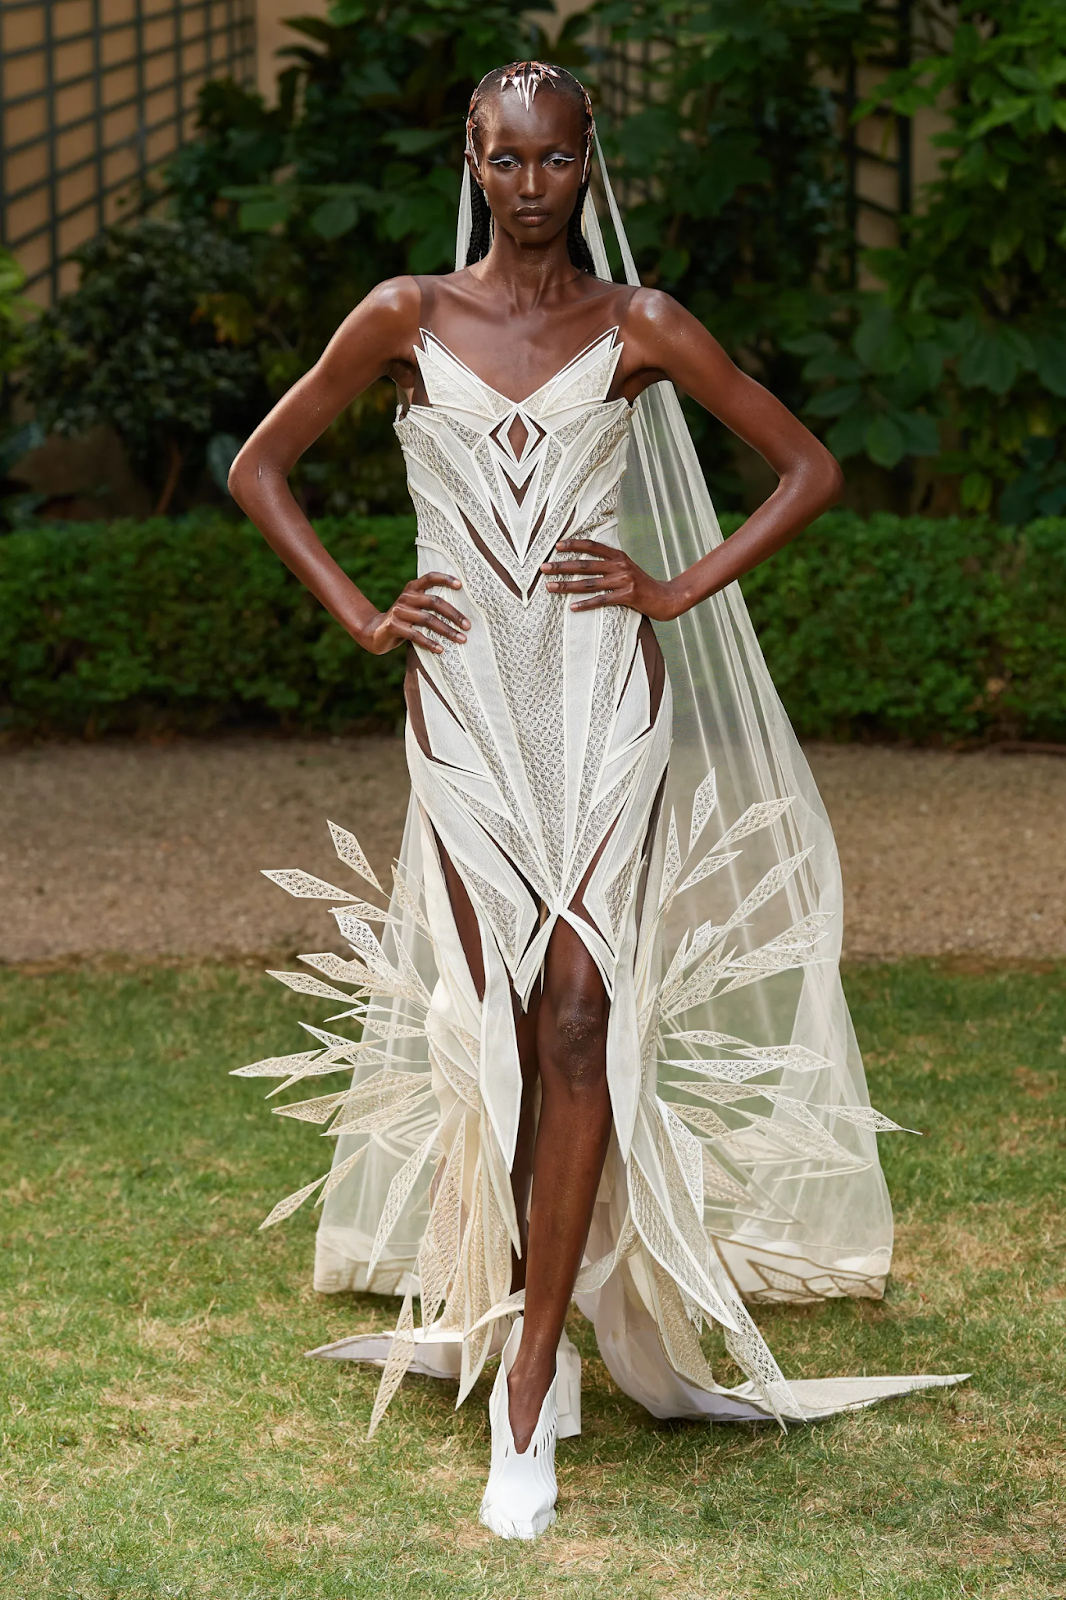 Iris Van Herpen Haute Couture features models dressed in artistic pieces